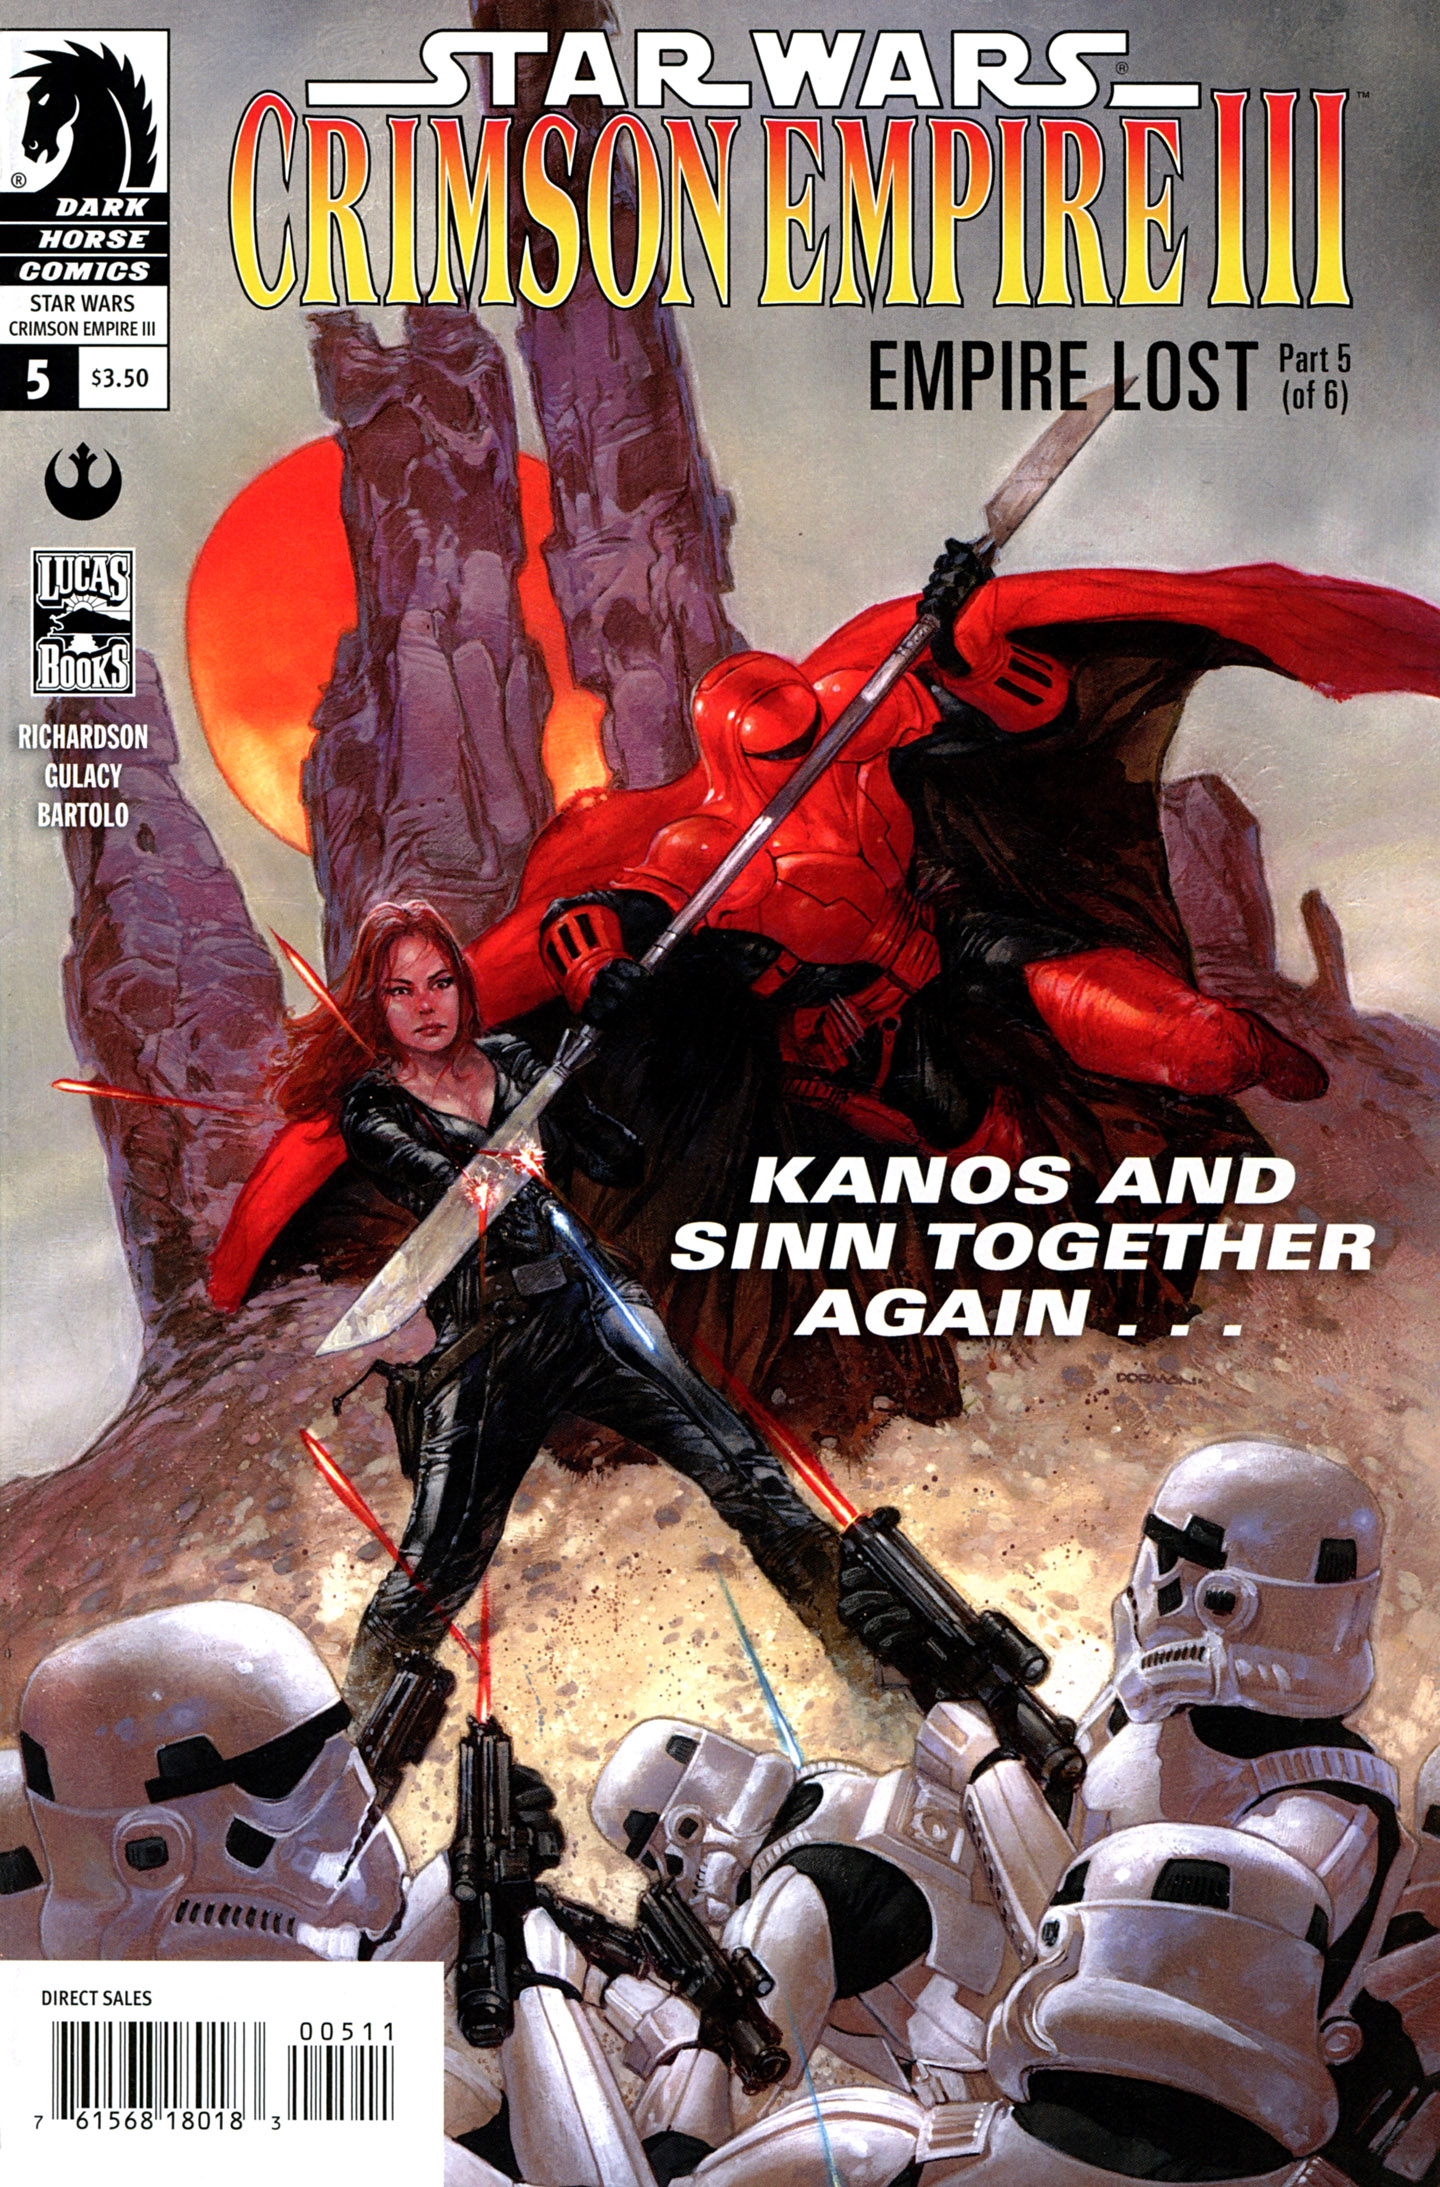 Star Wars: Crimson Empire III - Empire Lost issue 5 - Page 1